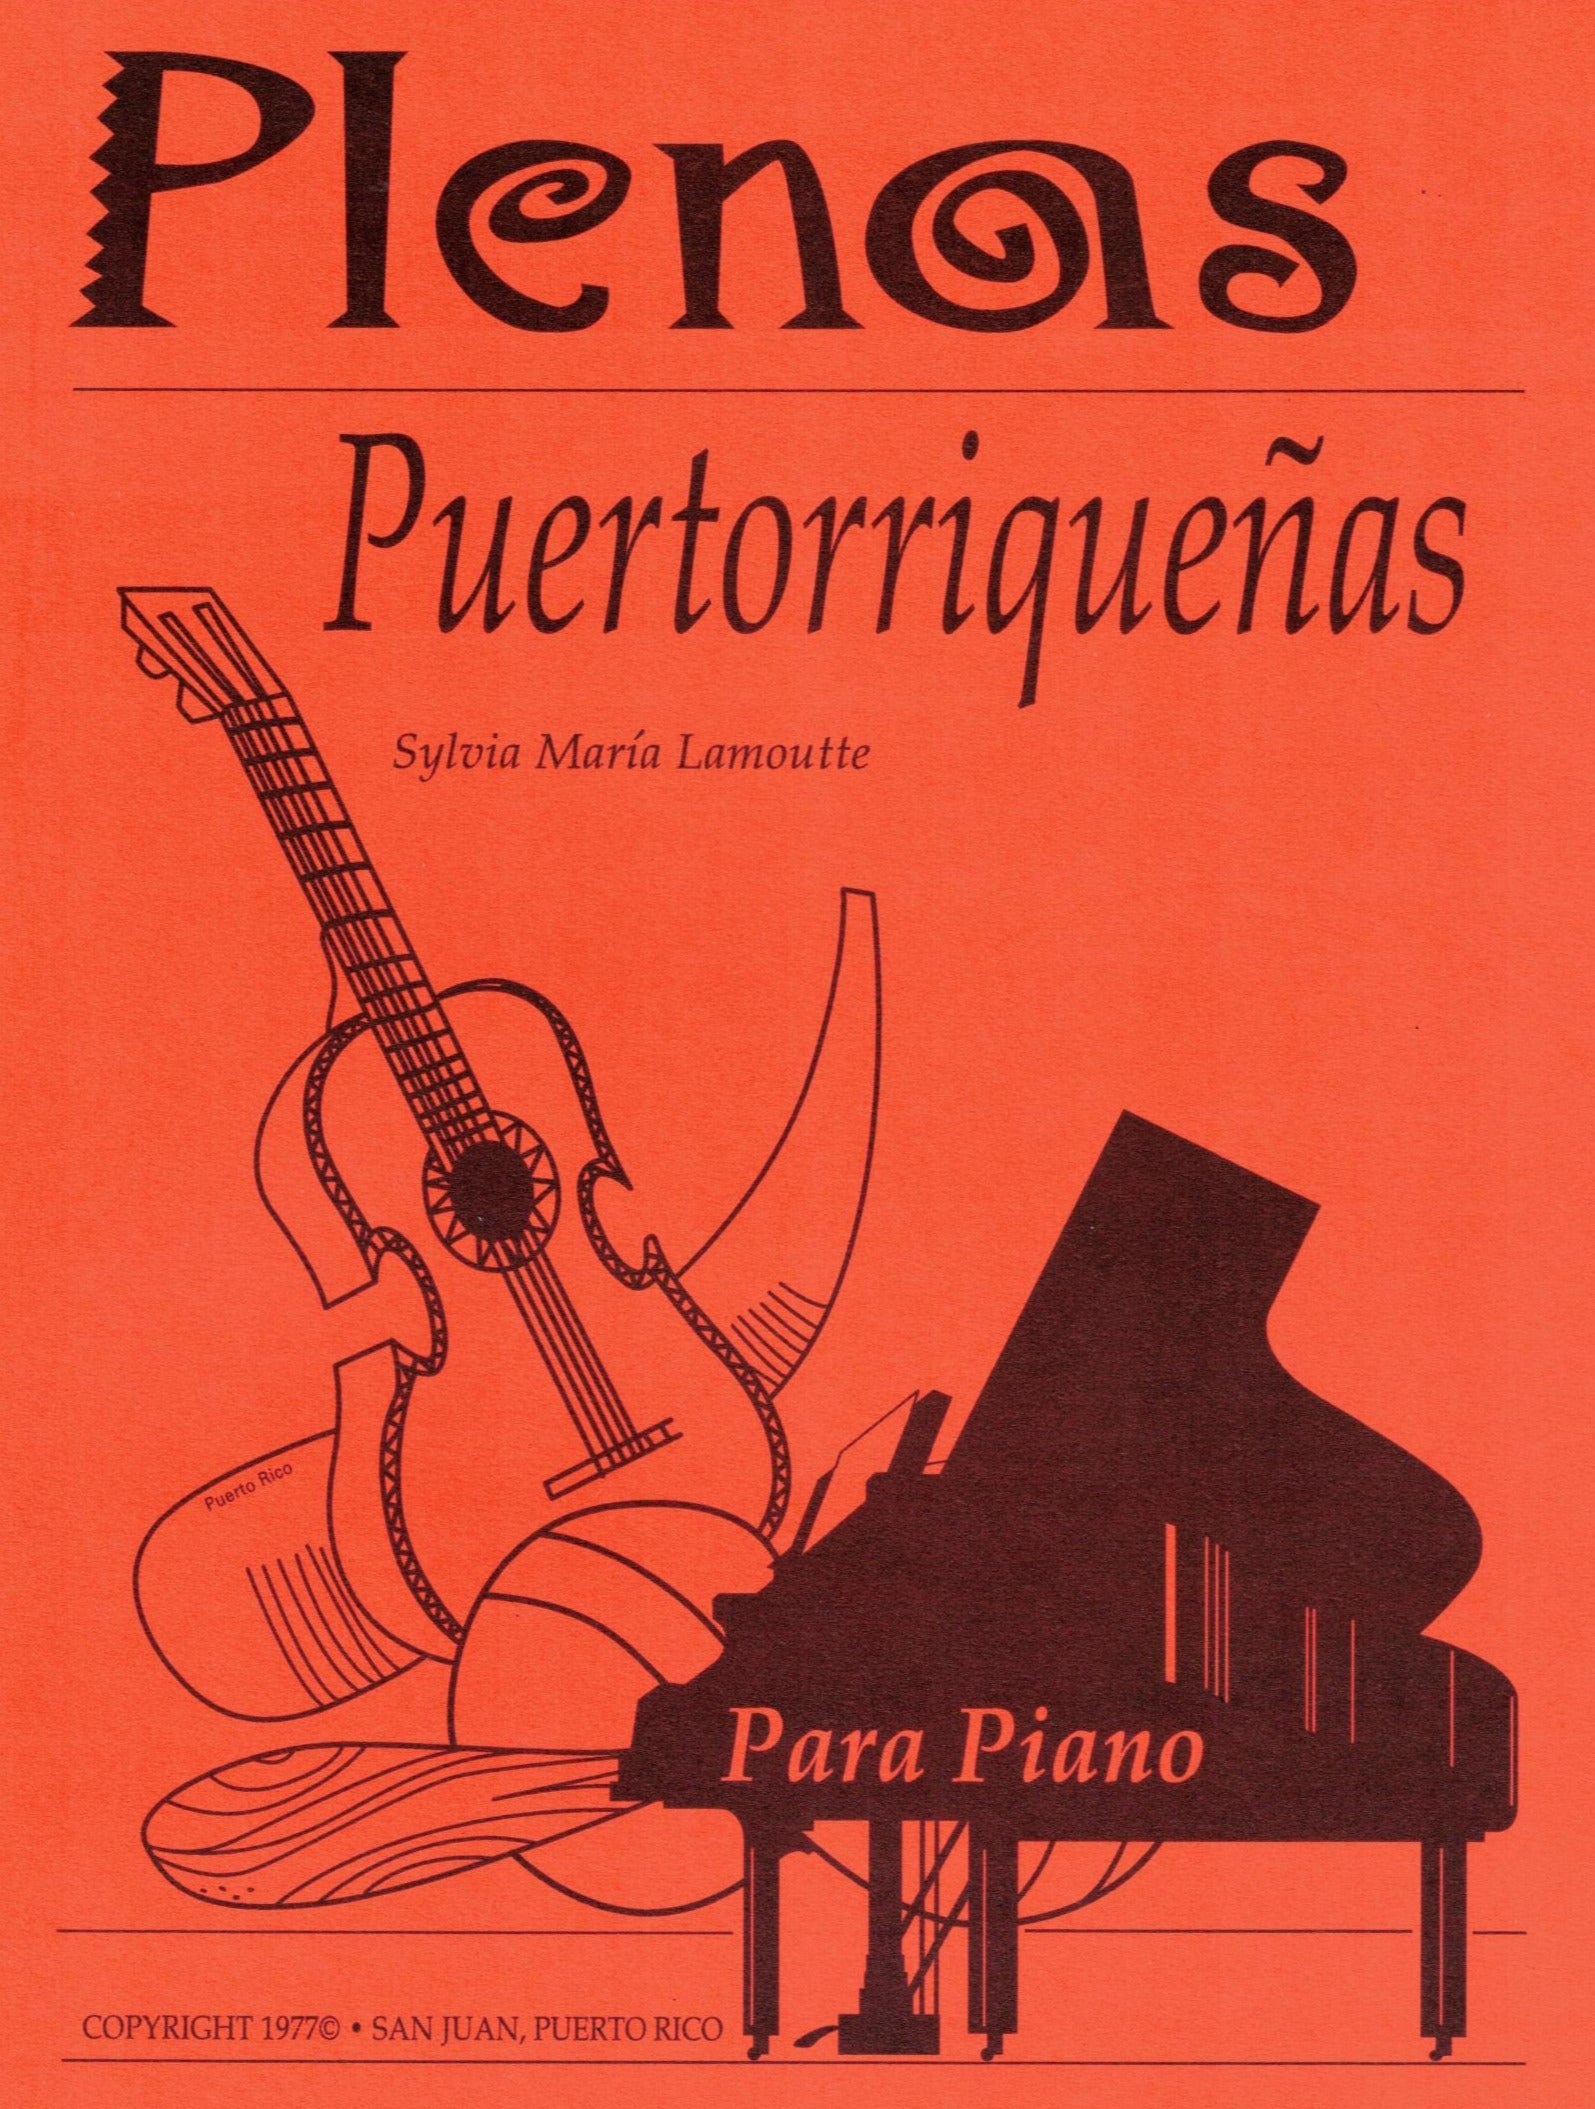 Plenas Puertorriqueñas Para Piano- Sylvia M. Lamoutte